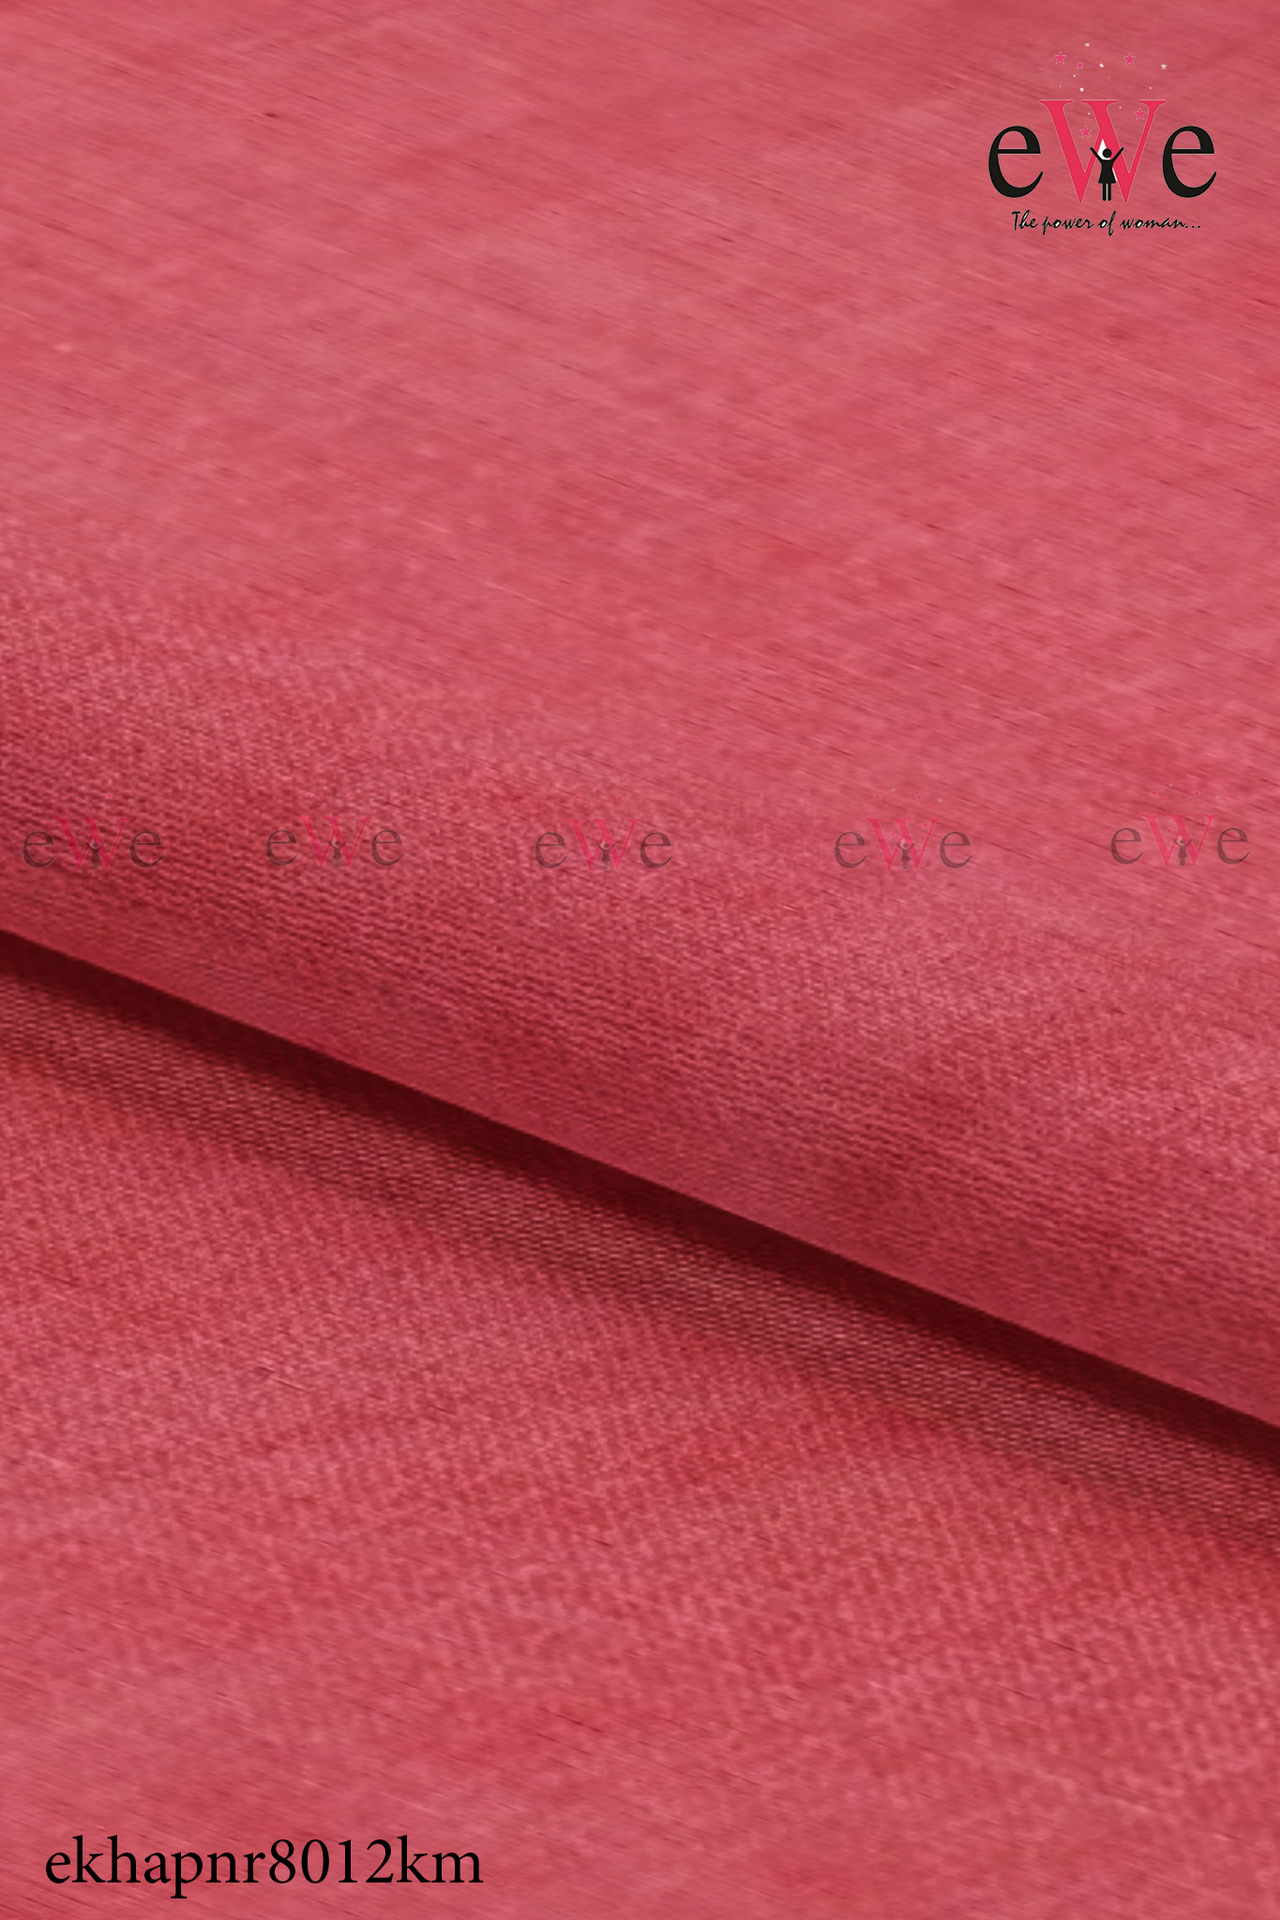 Imperial Red Handspun Handwoven Khadi Fabric